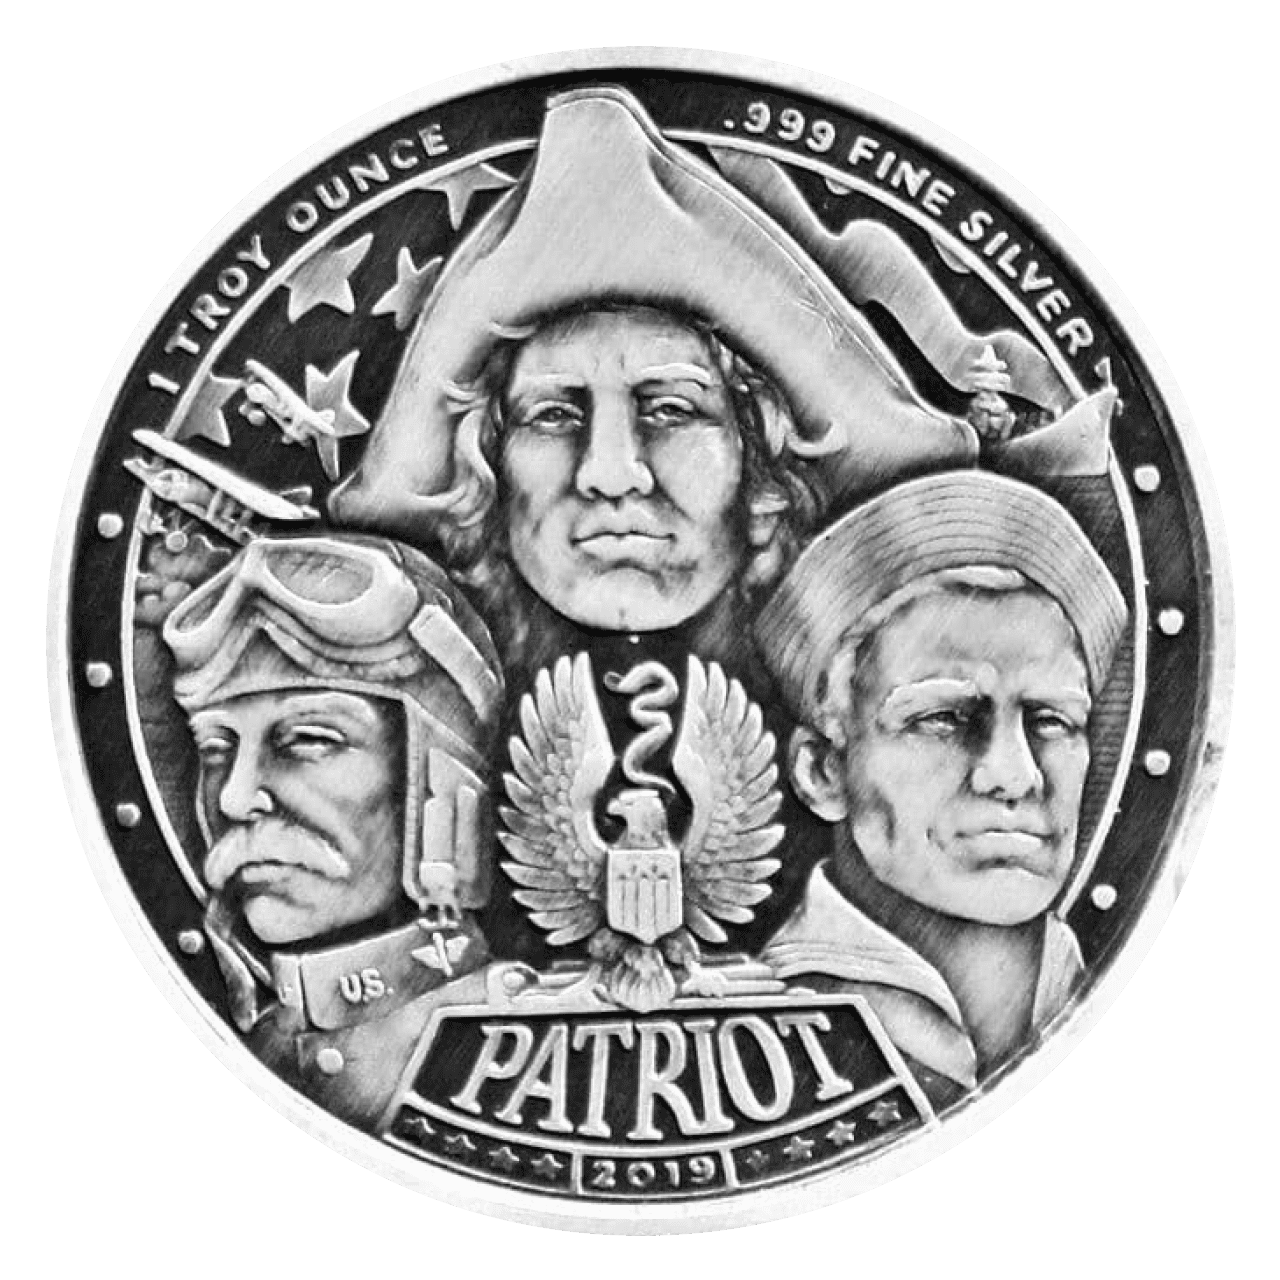 2019 Patriot World War II 1 oz Silver Round - Antique Finish